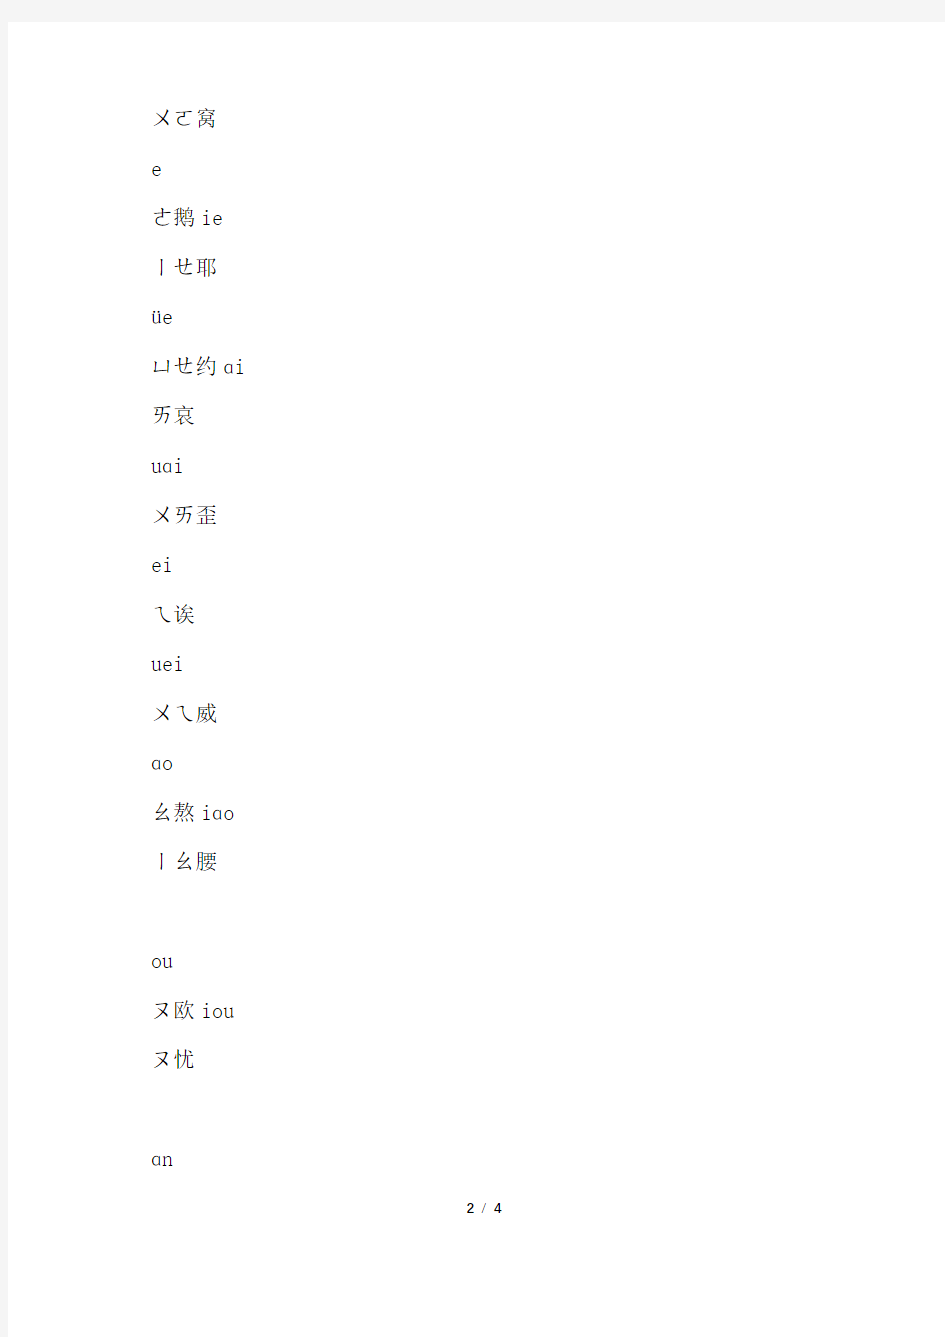 汉语拼音方案内容